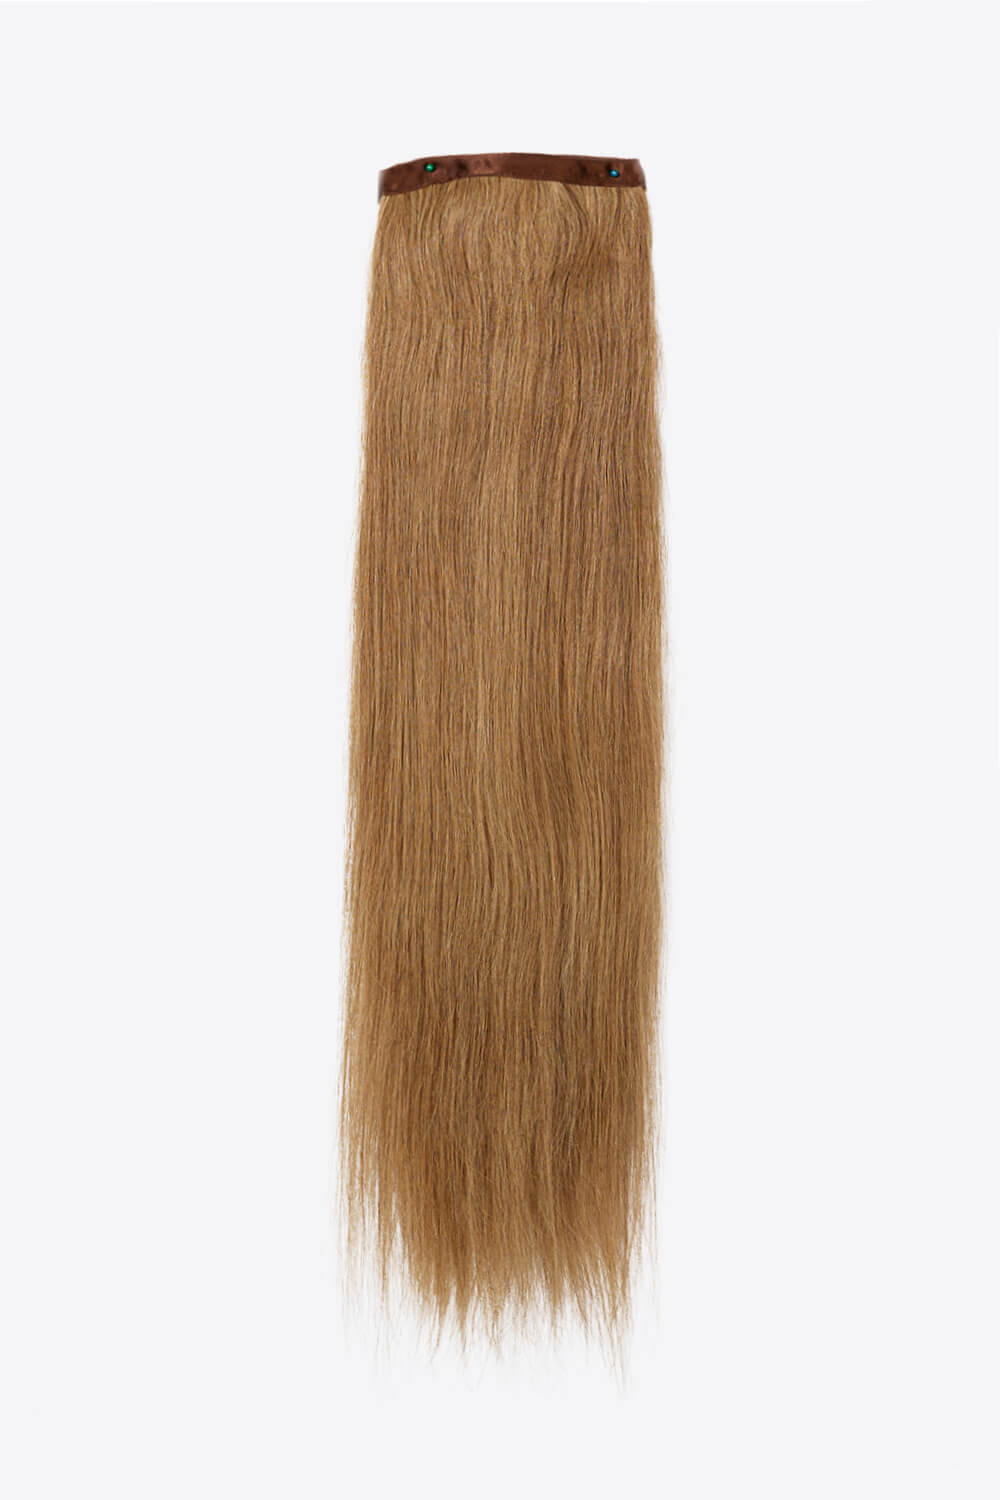 24" 130g #10 Straight Human Hair Ponytail